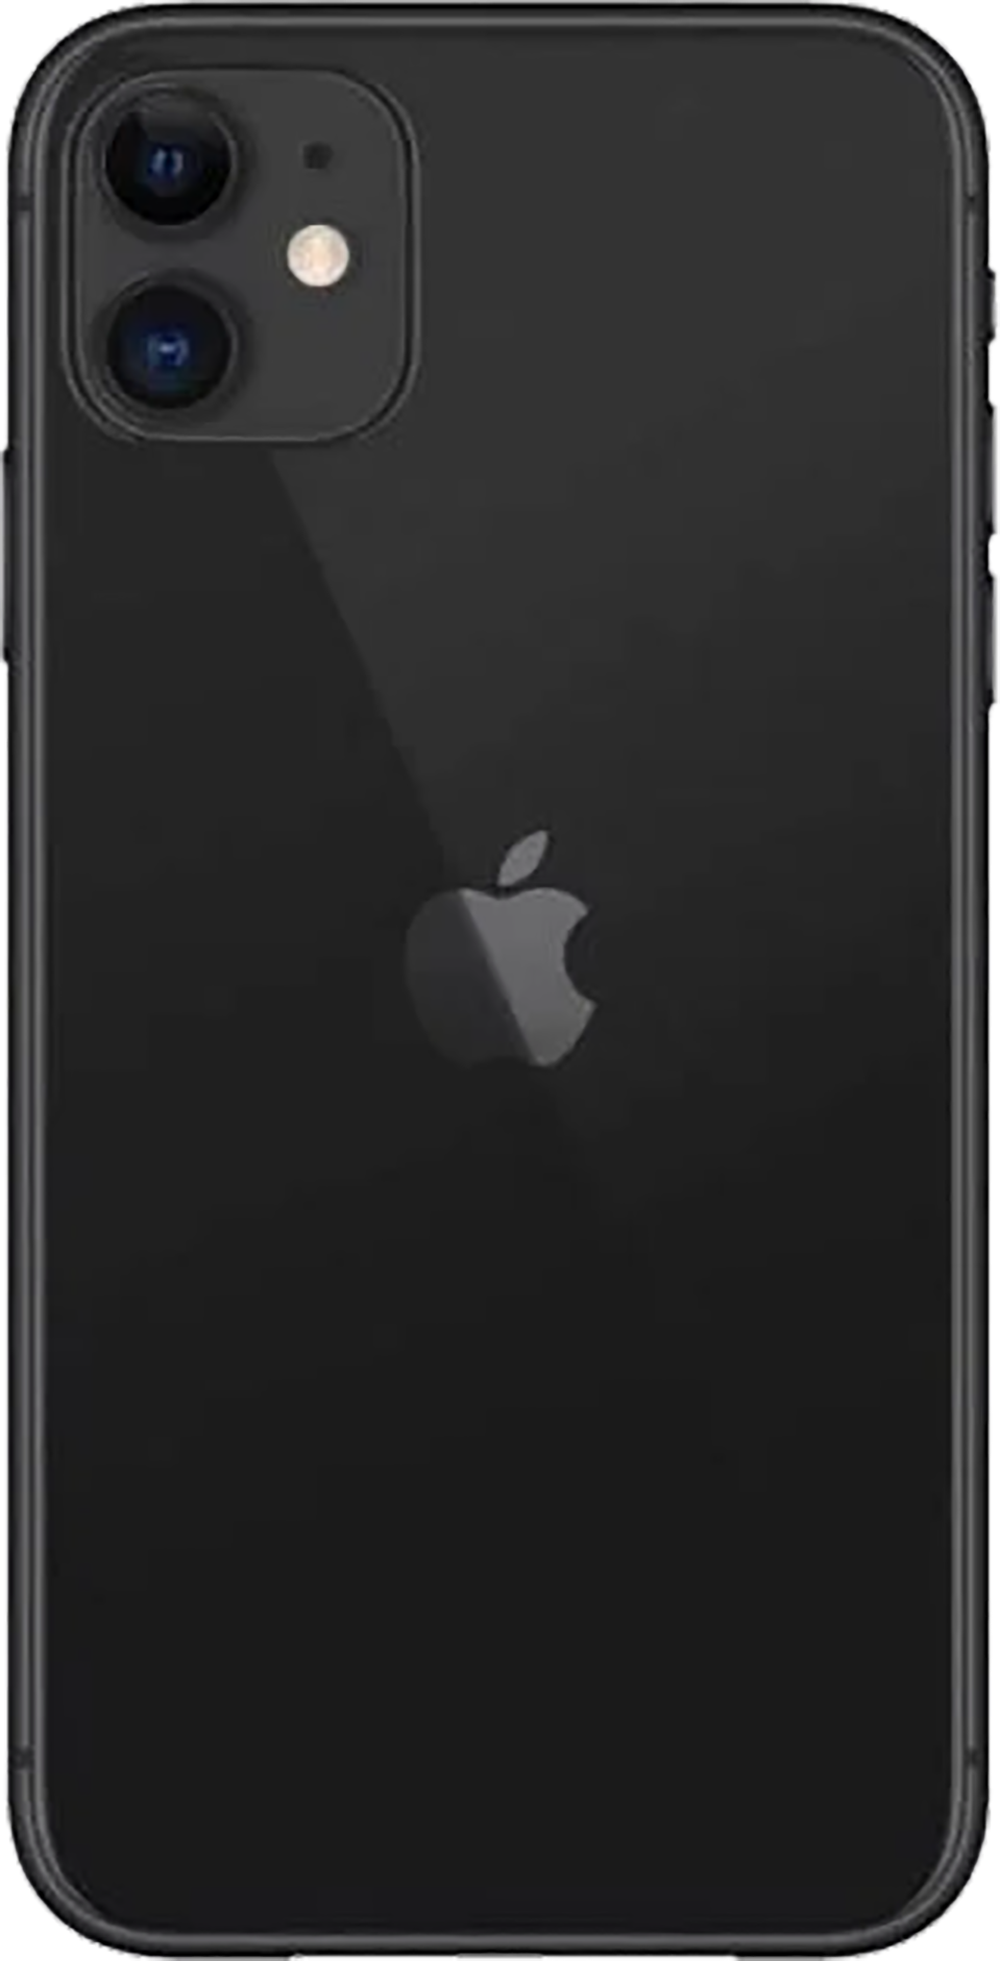 iPhone 11 64GB: Sở hữu ngay chiếc iPhone 11 64GB với thiết kế tuyệt đẹp, màn hình rộng lớn cùng nhiều tính năng độc đáo và tiện ích. Mang đến cho bạn trải nghiệm sử dụng điện thoại thật tuyệt vời với chất lượng hình ảnh sắc nét và hiệu suất xử lý mạnh mẽ. Hãy để tâm hồn bạn bay cao trong thế giới công nghệ với iPhone 11 64GB.